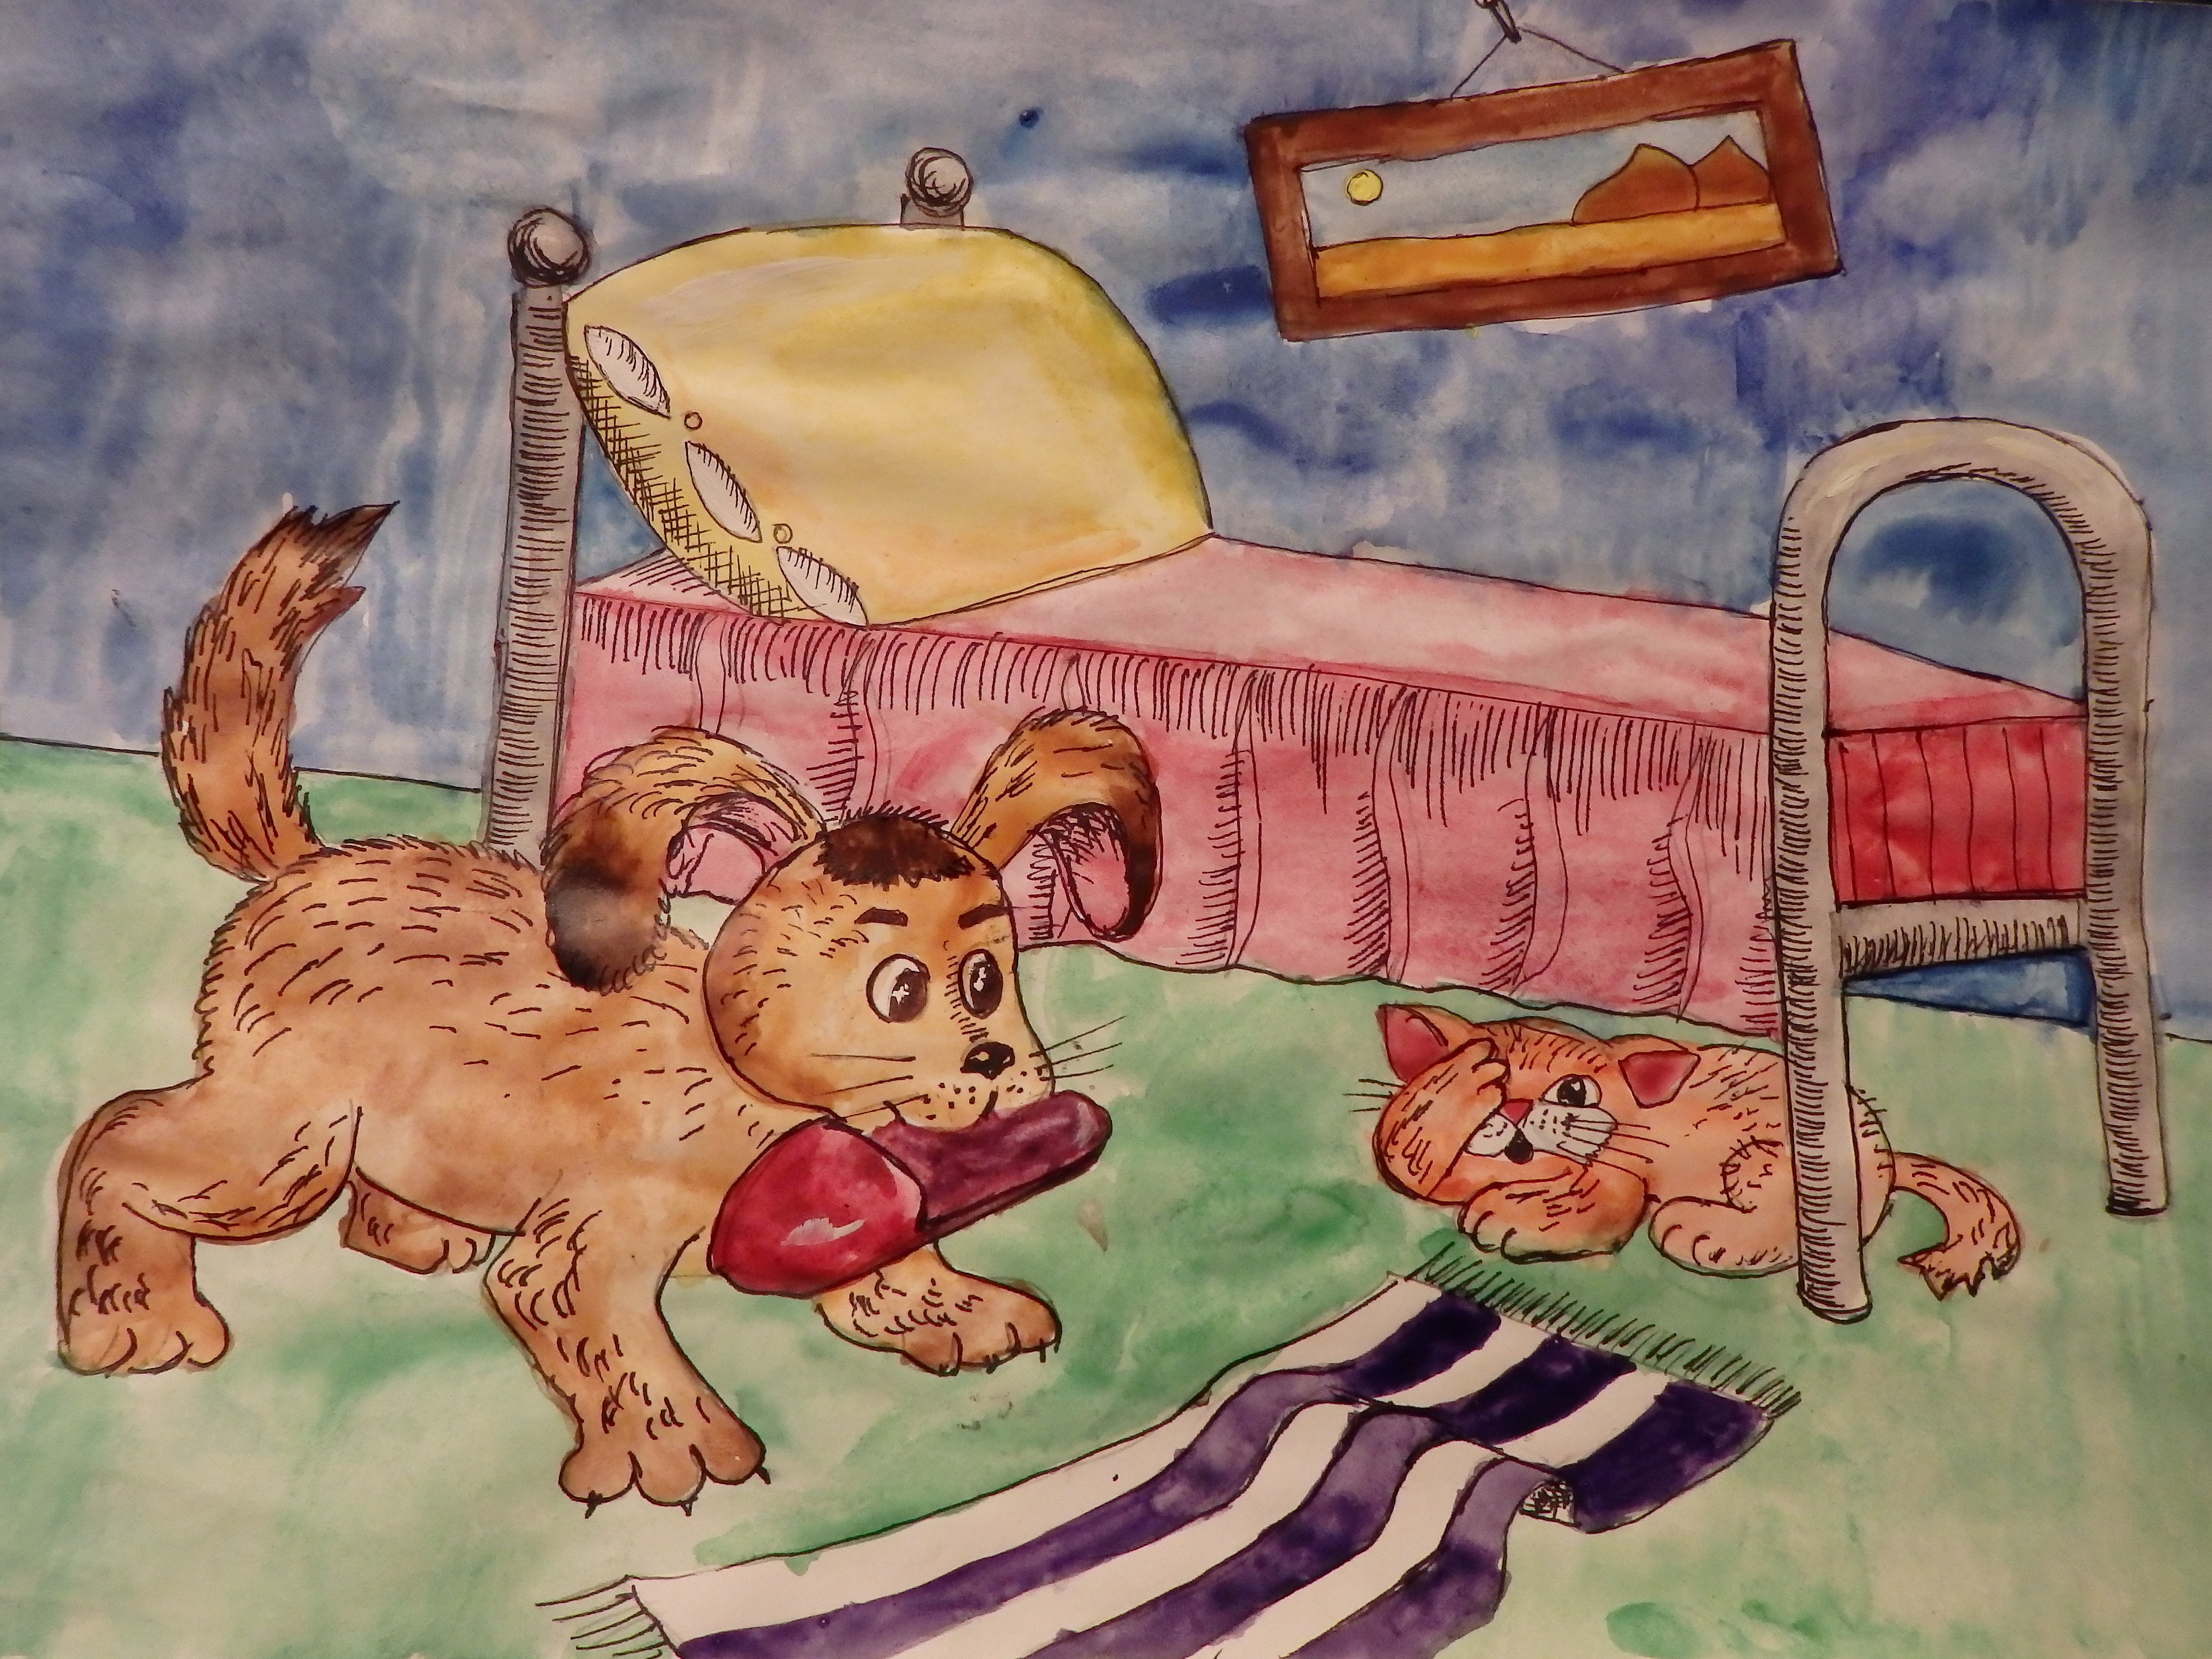 Нарисовать михалкову рисунок. Иллюстрации к произведениям Михалкова для детей. Михалков щенок иллюстрации. Иллюстрация к стихотворению щенок. Трезор рисунок детский.